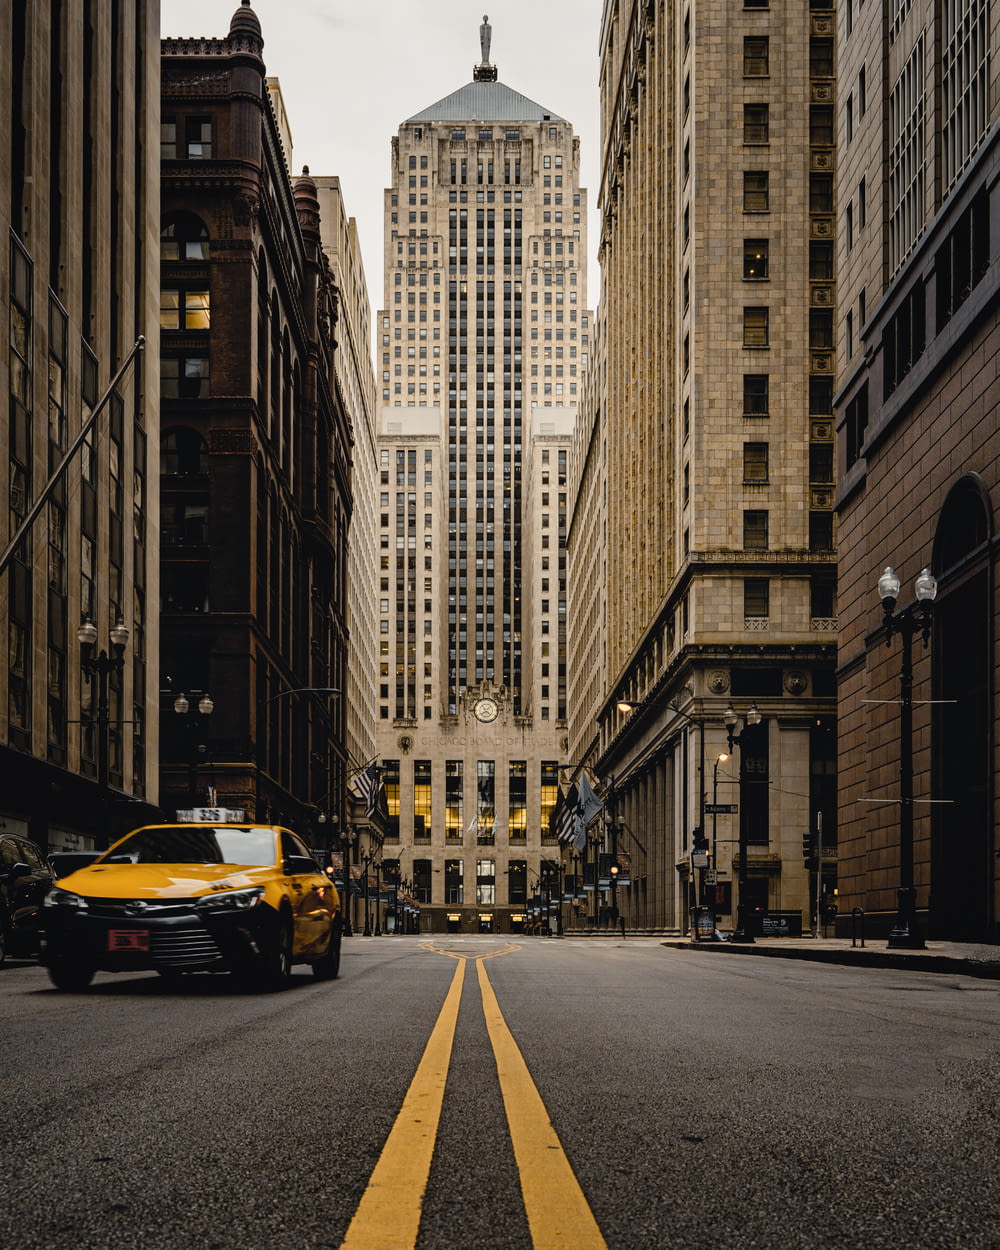 Coche amarillo en la carretera entre edificios de gran altura durante el día